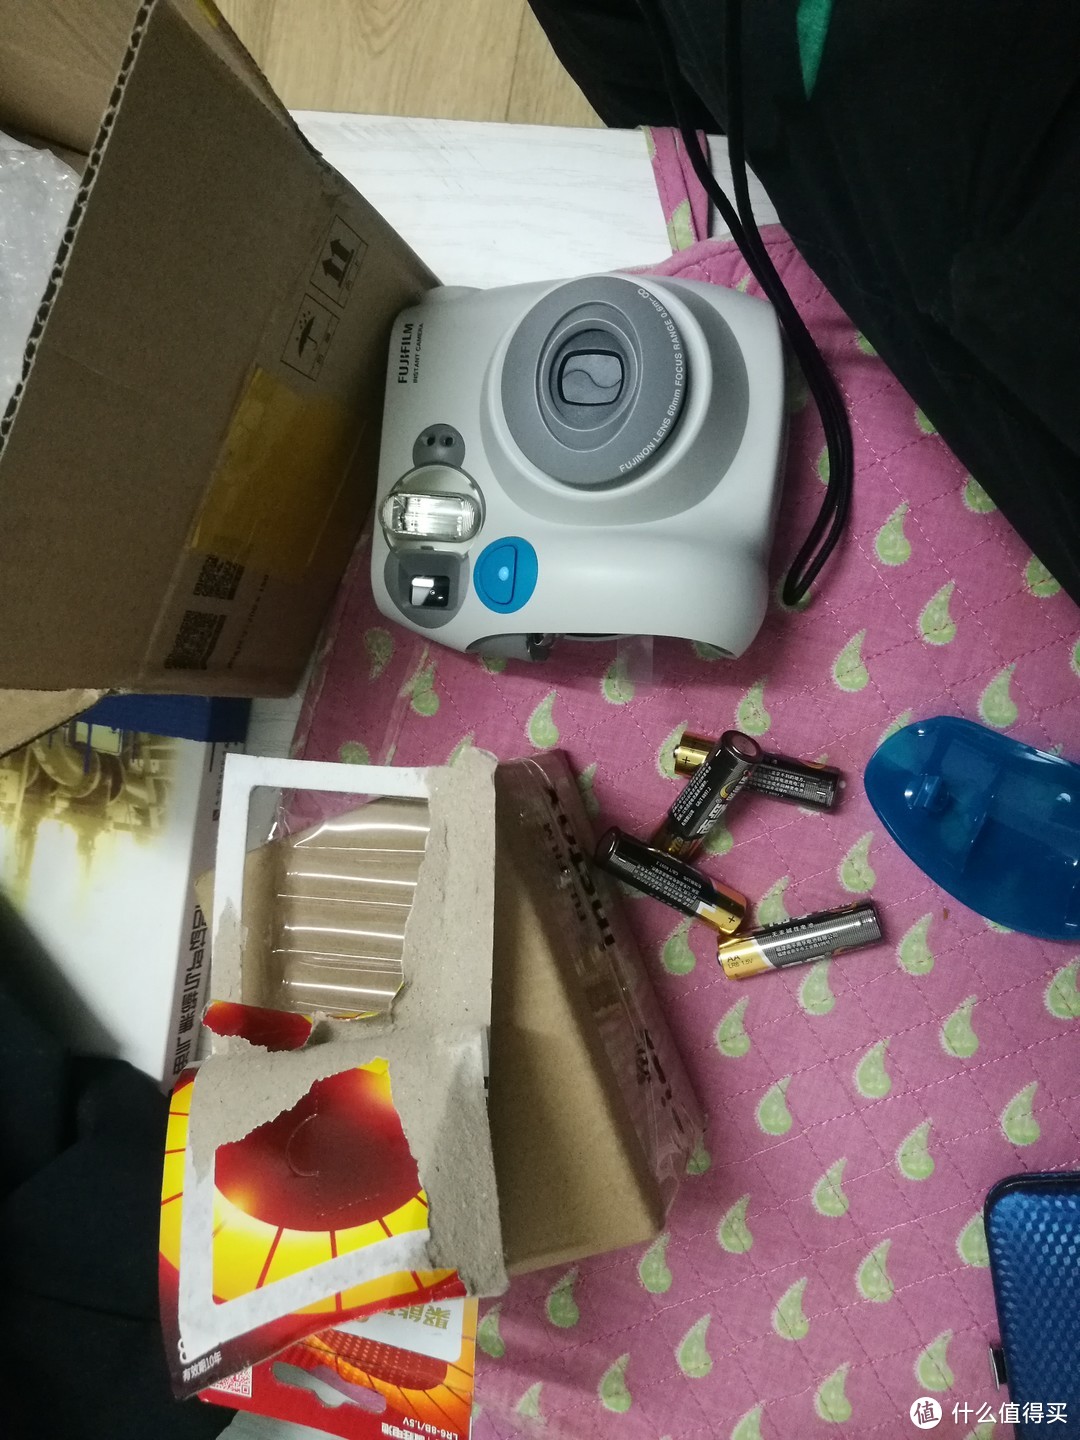 富士Instax mini 7s一次成像相机开箱